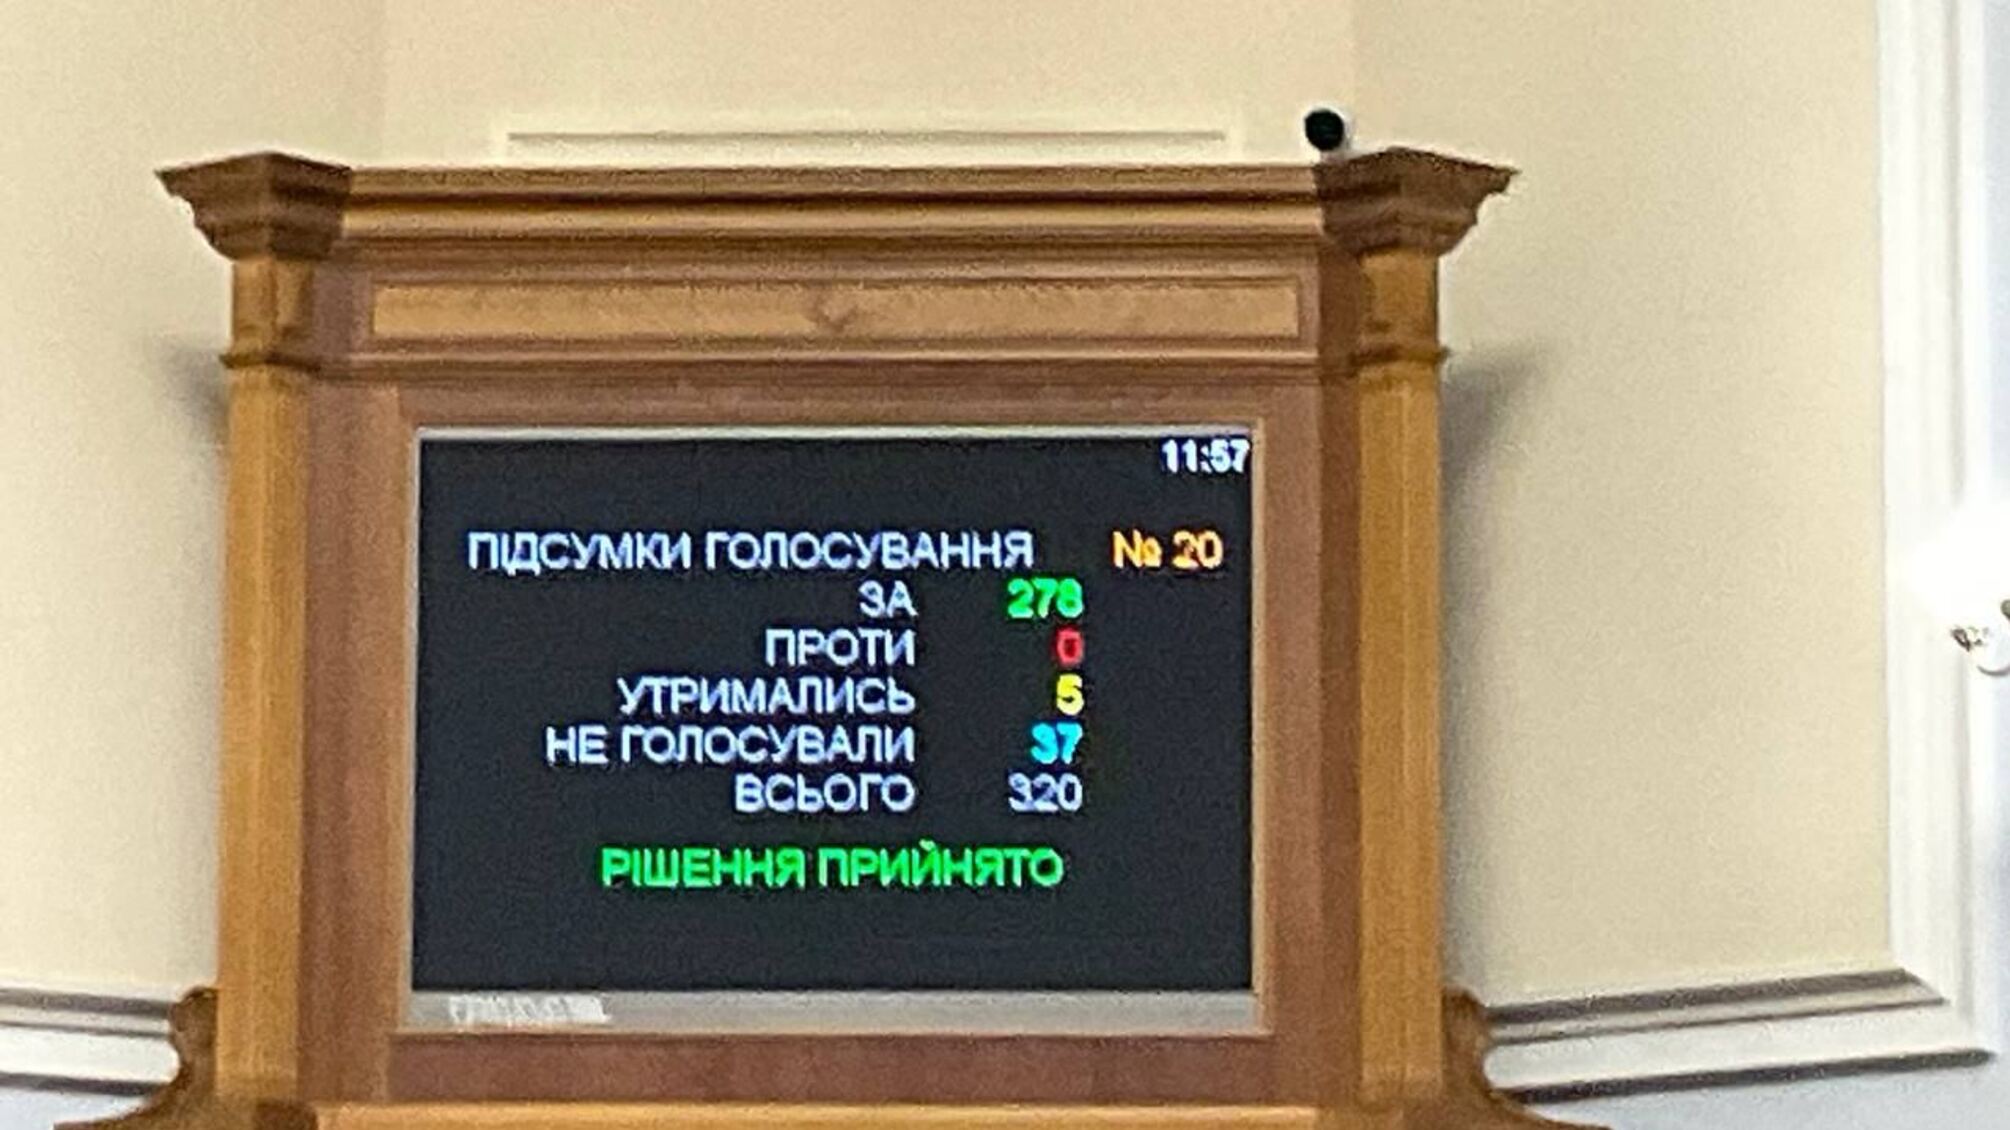 Поддержало законопроект 278 депутатов